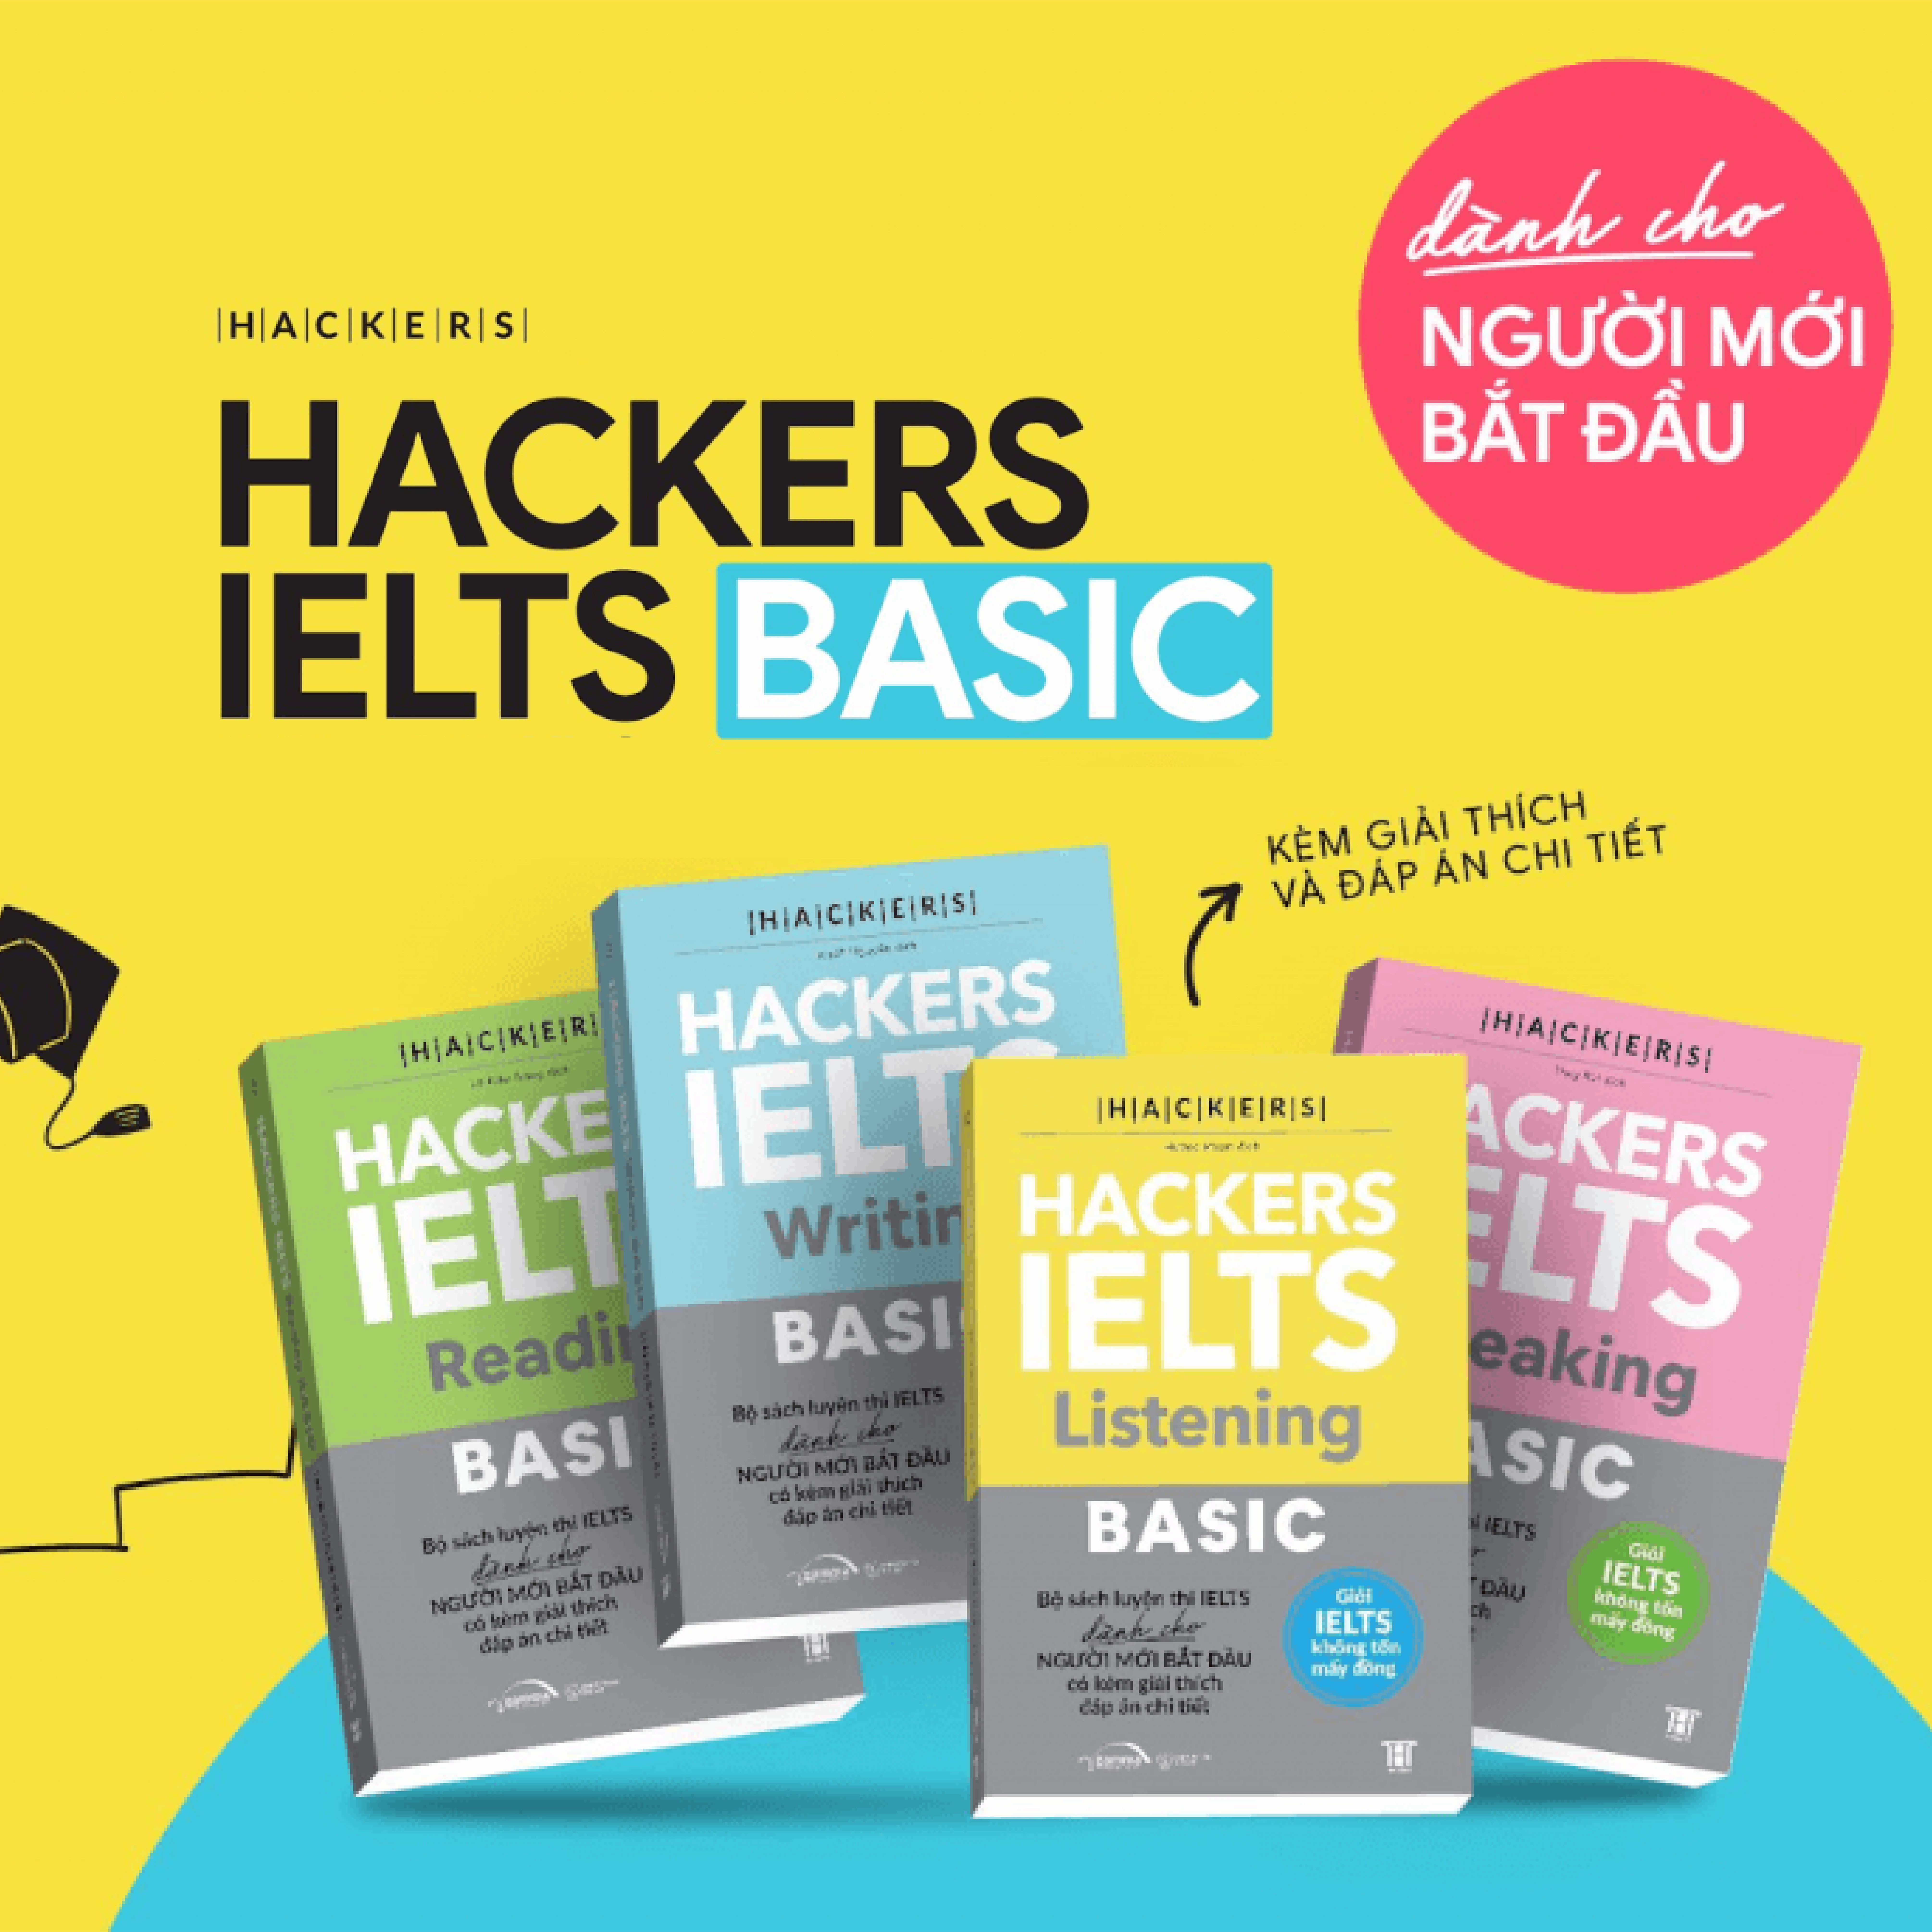 Trạm Đọc| Hackers IELTS Basic: Reading + Writing + Speaking + Listening ( Dành cho người mới bắt đầu )